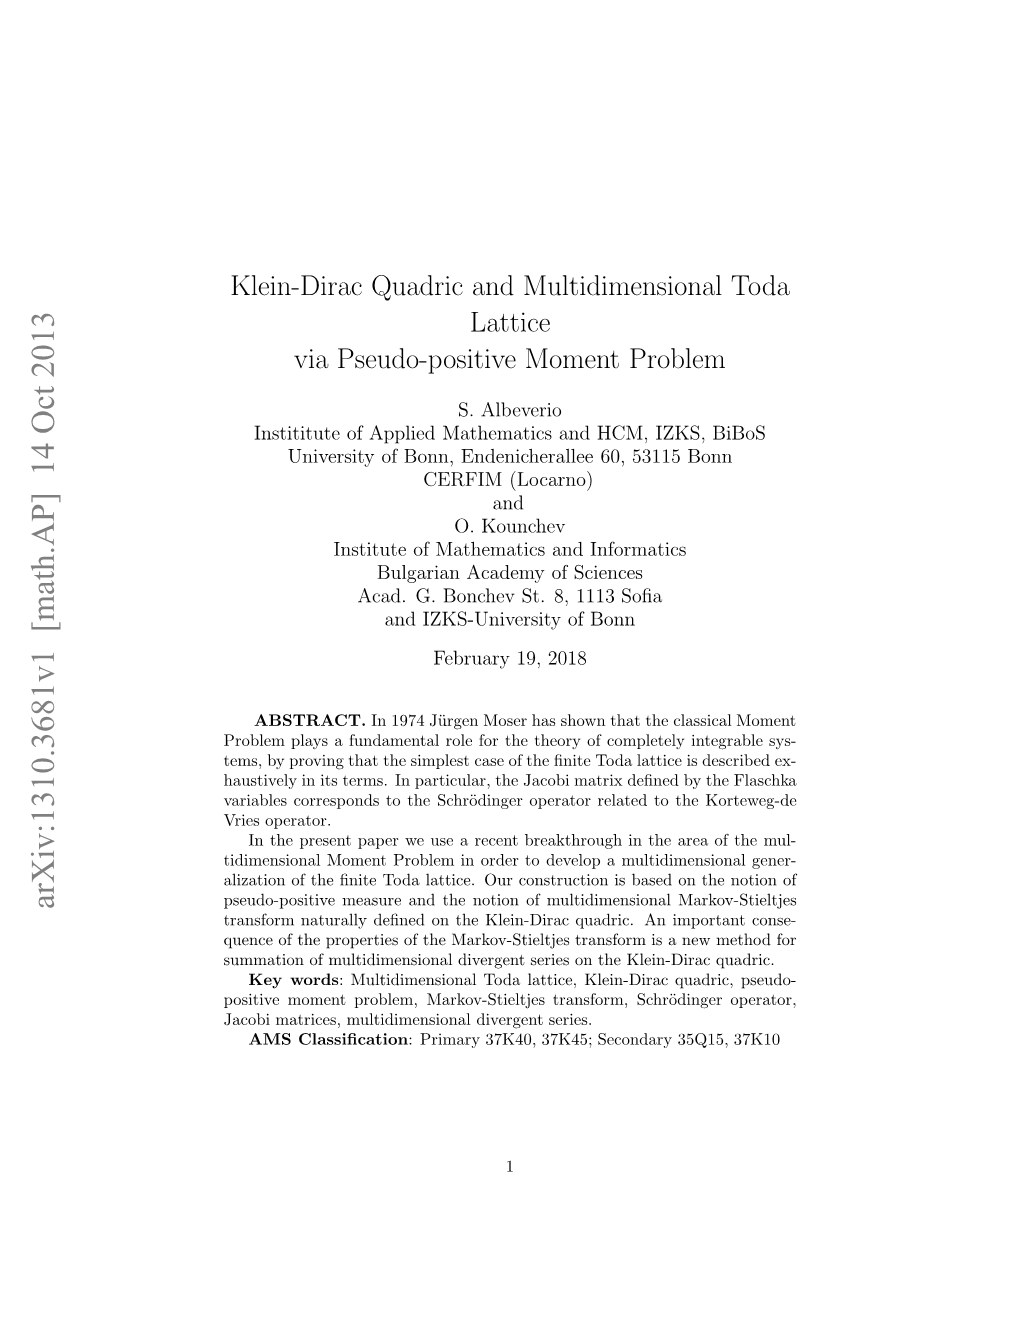 Klein-Dirac Quadric and Multidimensional Toda Lattice Via